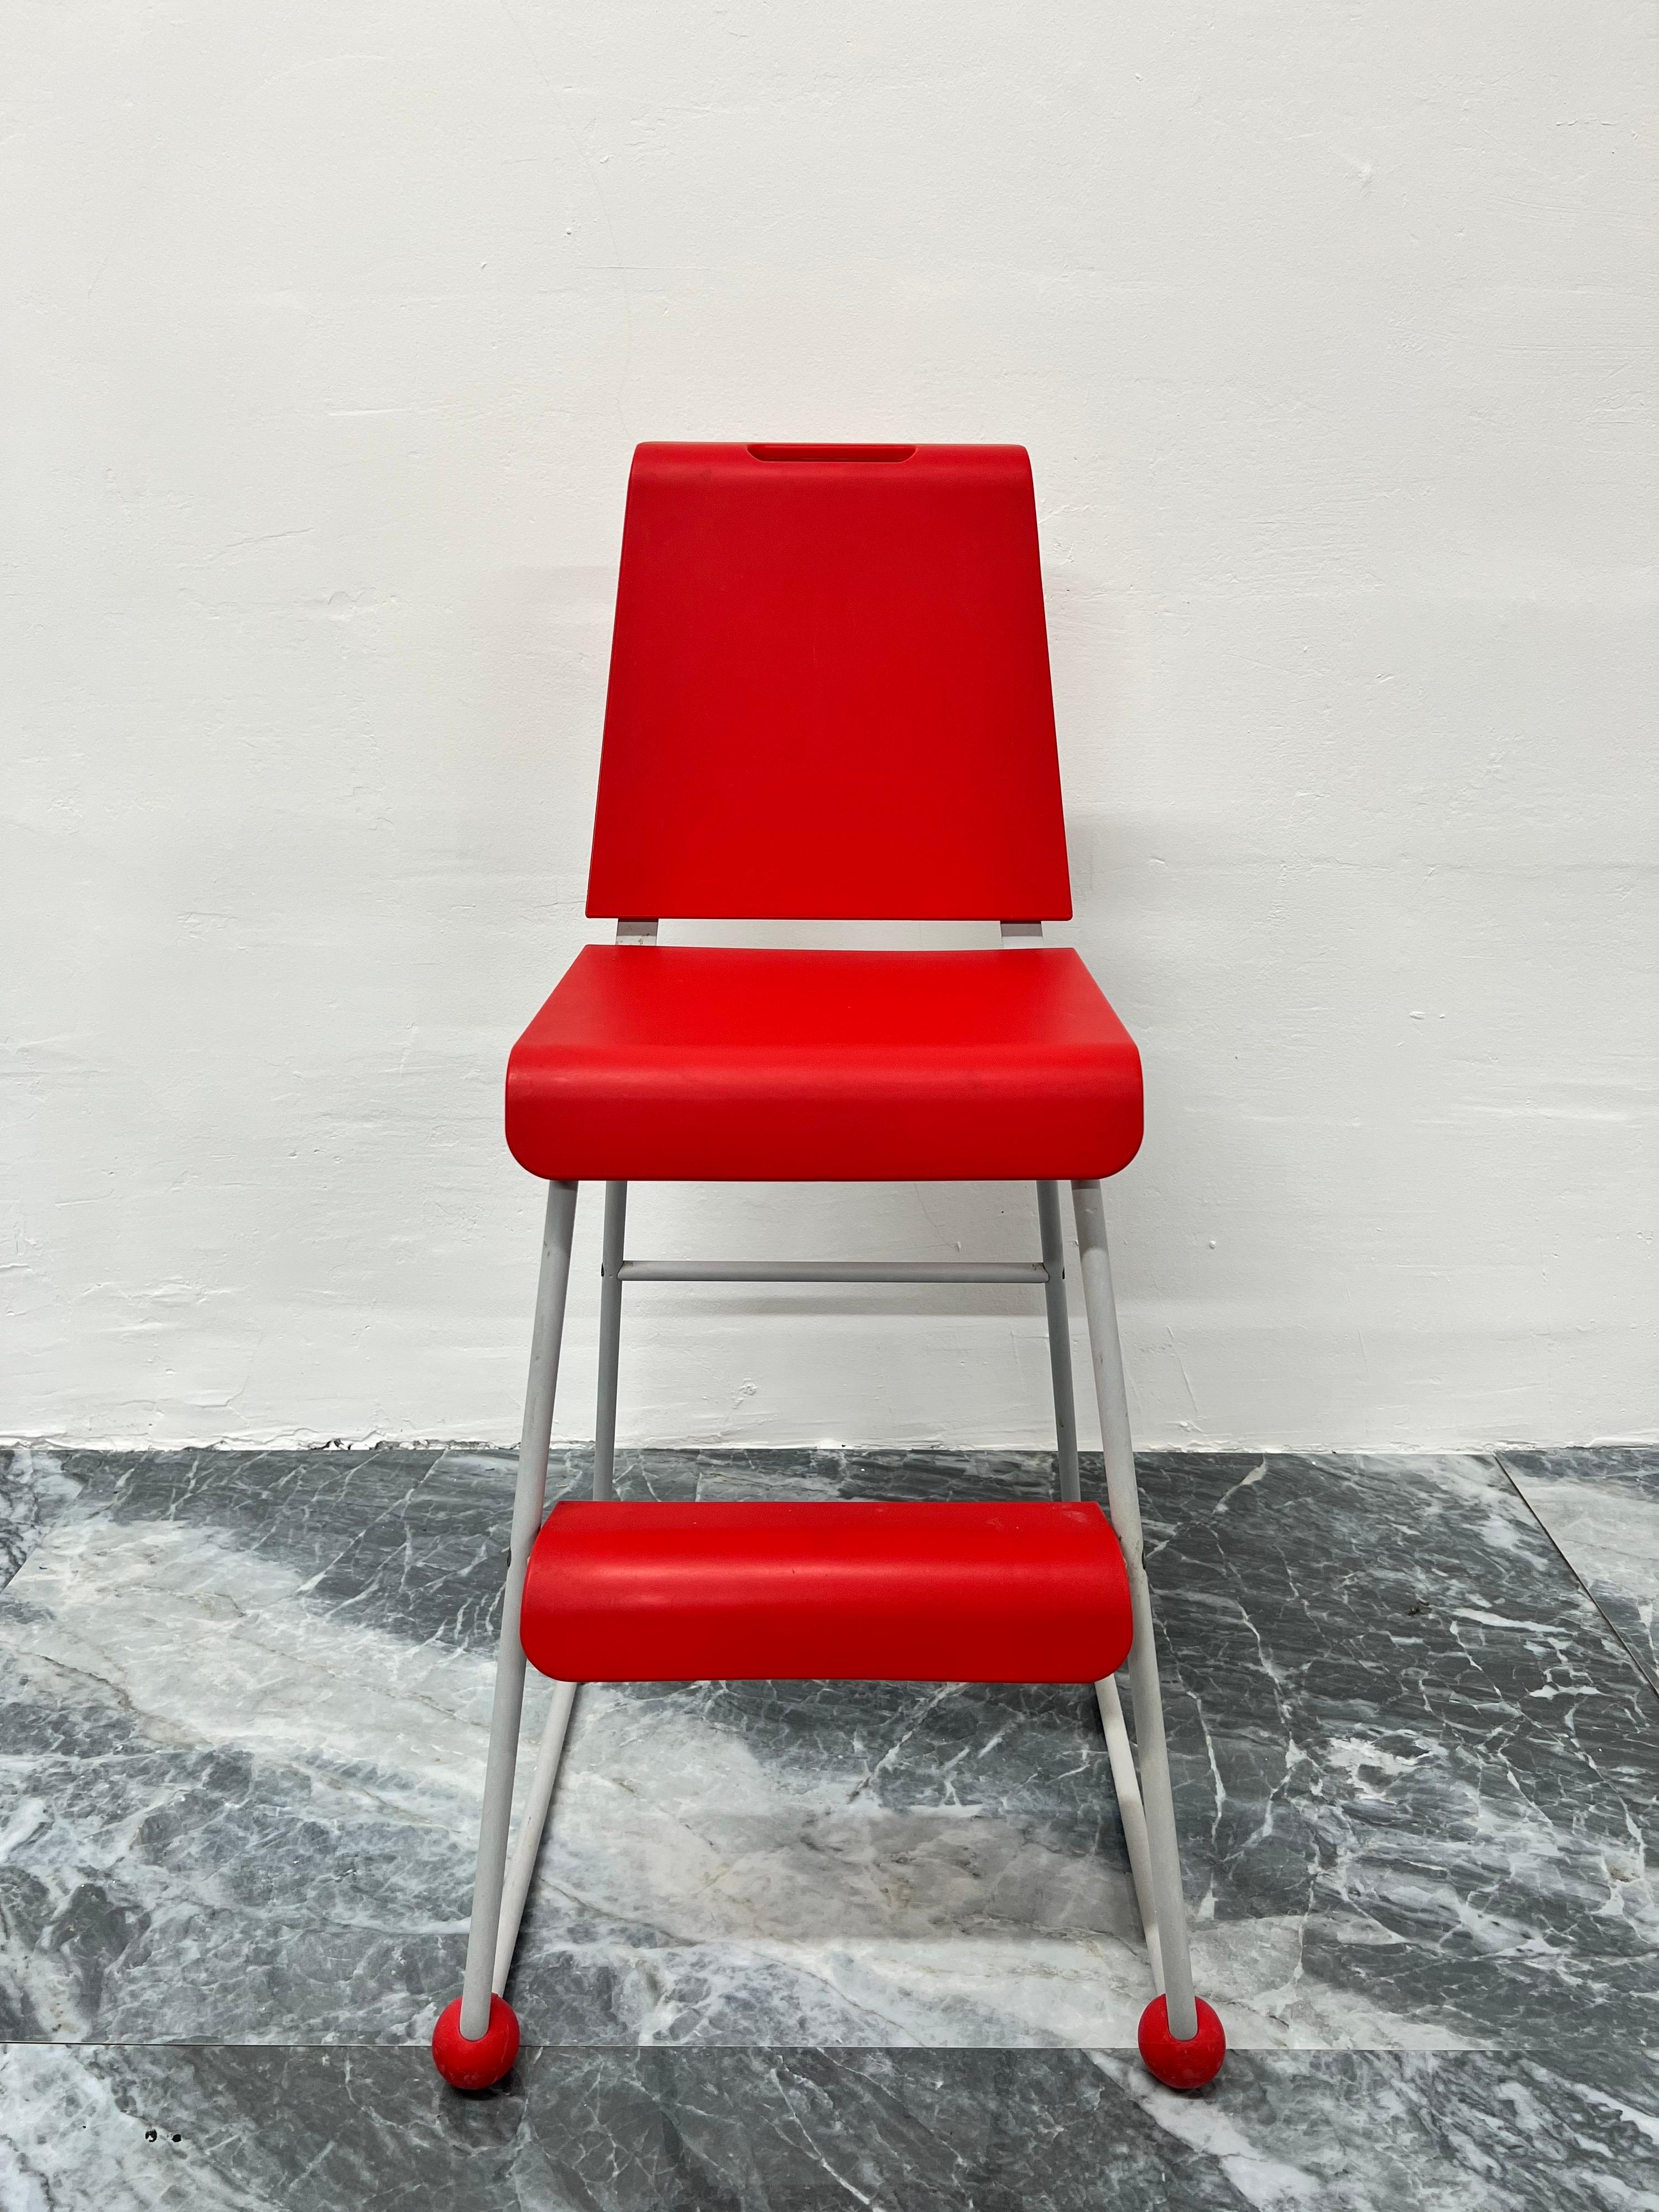 Postmoderner Kinderstuhl oder -hocker im Memphis-Stil mit rotem Kunststoffsitz und Fußstütze auf grauem pulverbeschichtetem Stahlrahmen, entworfen von Niels Gammelgaard für Ikea, um 1990.